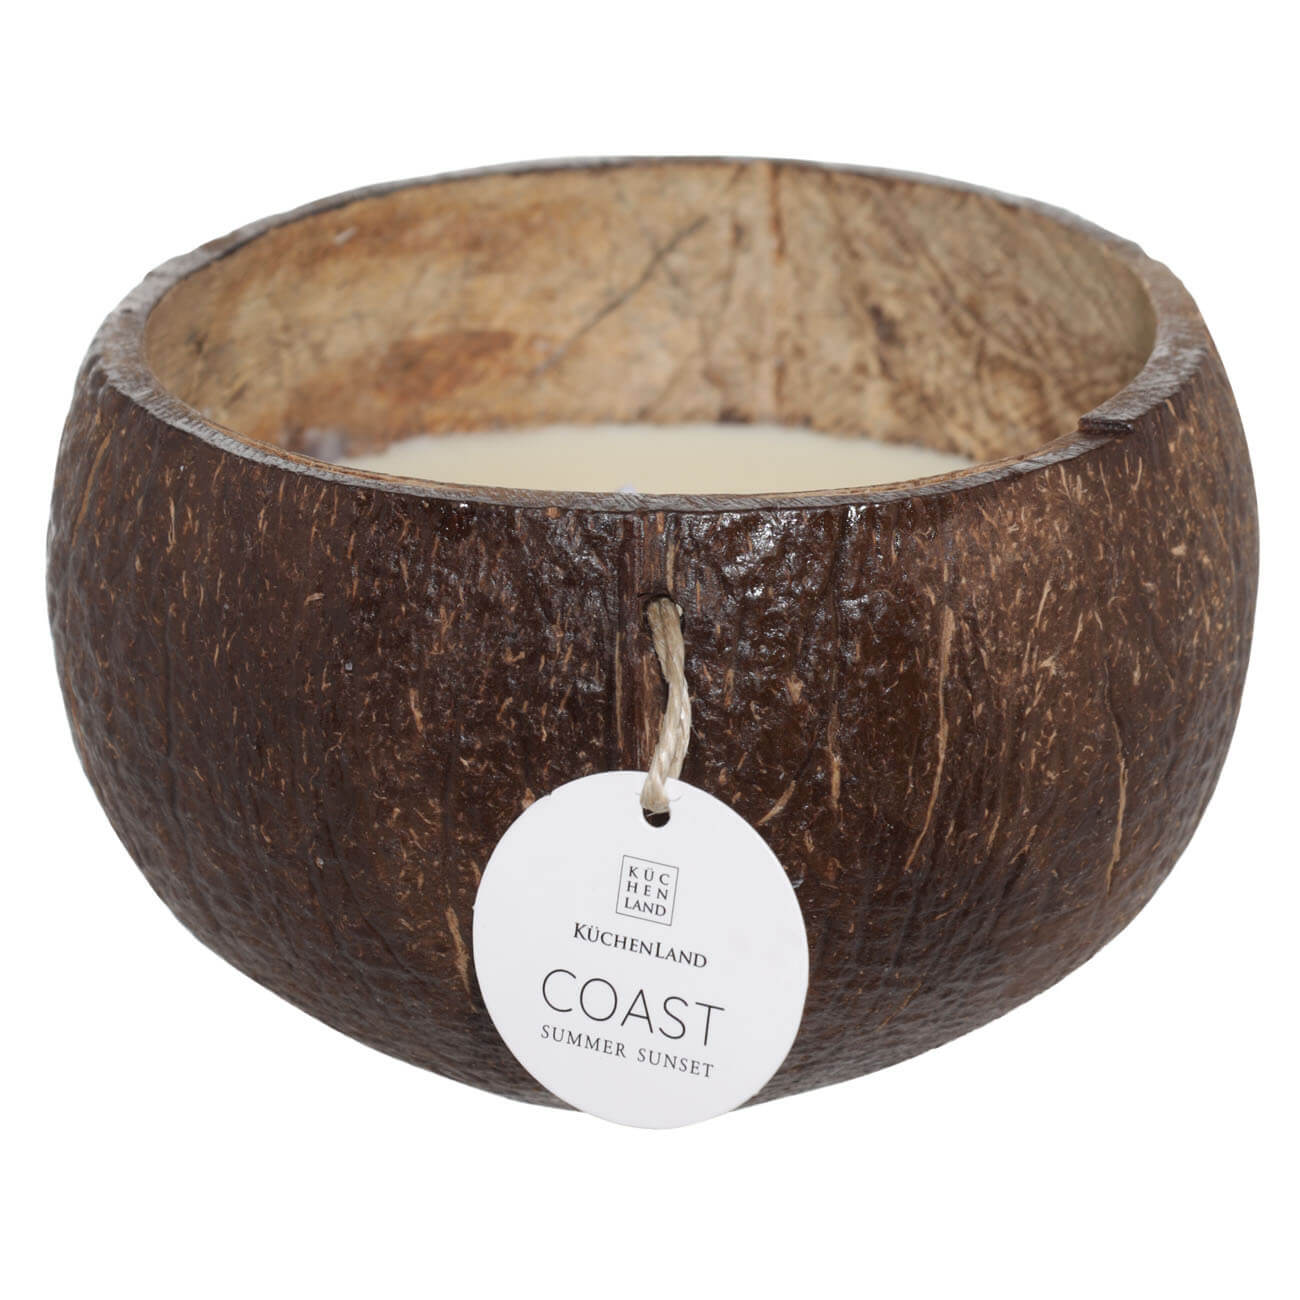 Свеча ароматическая, 8х12 см, в кокосовом подсвечнике, Summer Sunset, Coast